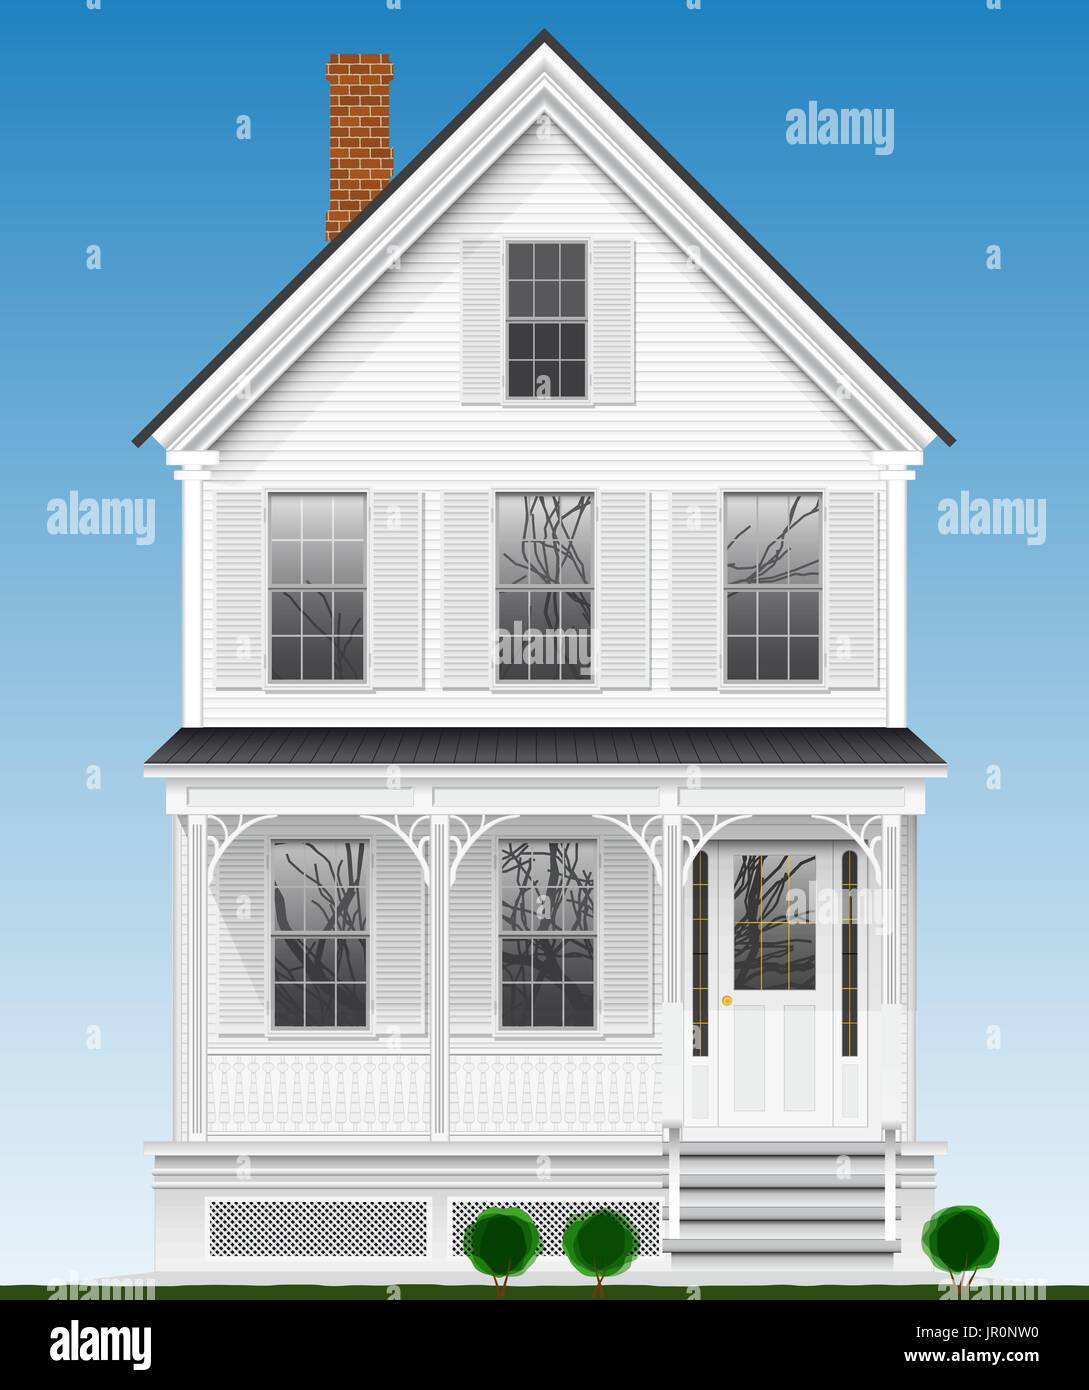 Un américain classique et typique maison en bois peint avec peinture blanche. Deux étages, sous-sol et grenier. Illustration de Vecteur